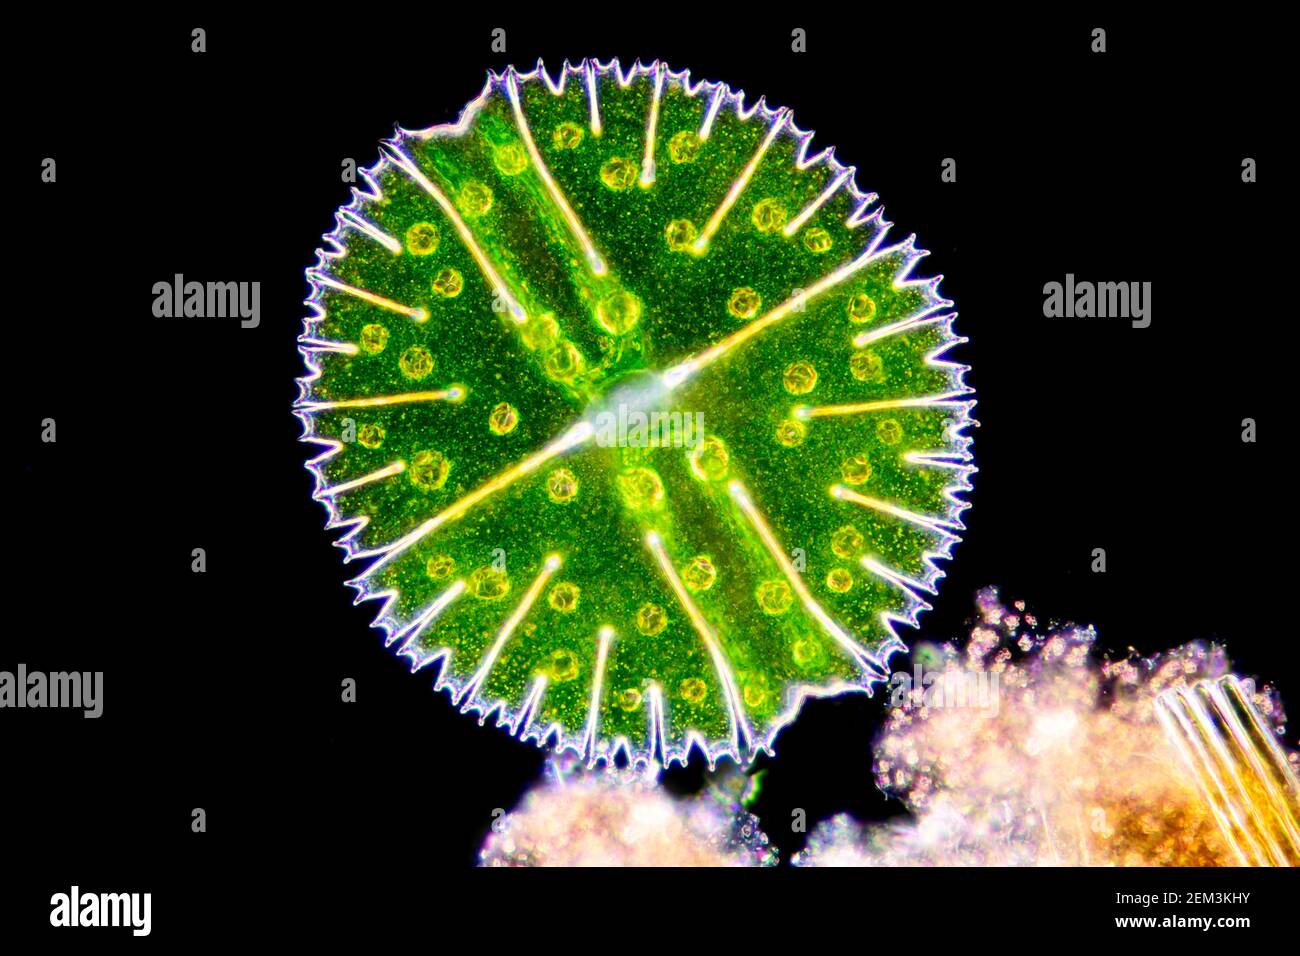 Micrasterie (Micrasterias rotata), alga verde unicellulare, immagine microscopica a campo scuro, ingrandimento x100 correlato a 35 mm Foto Stock